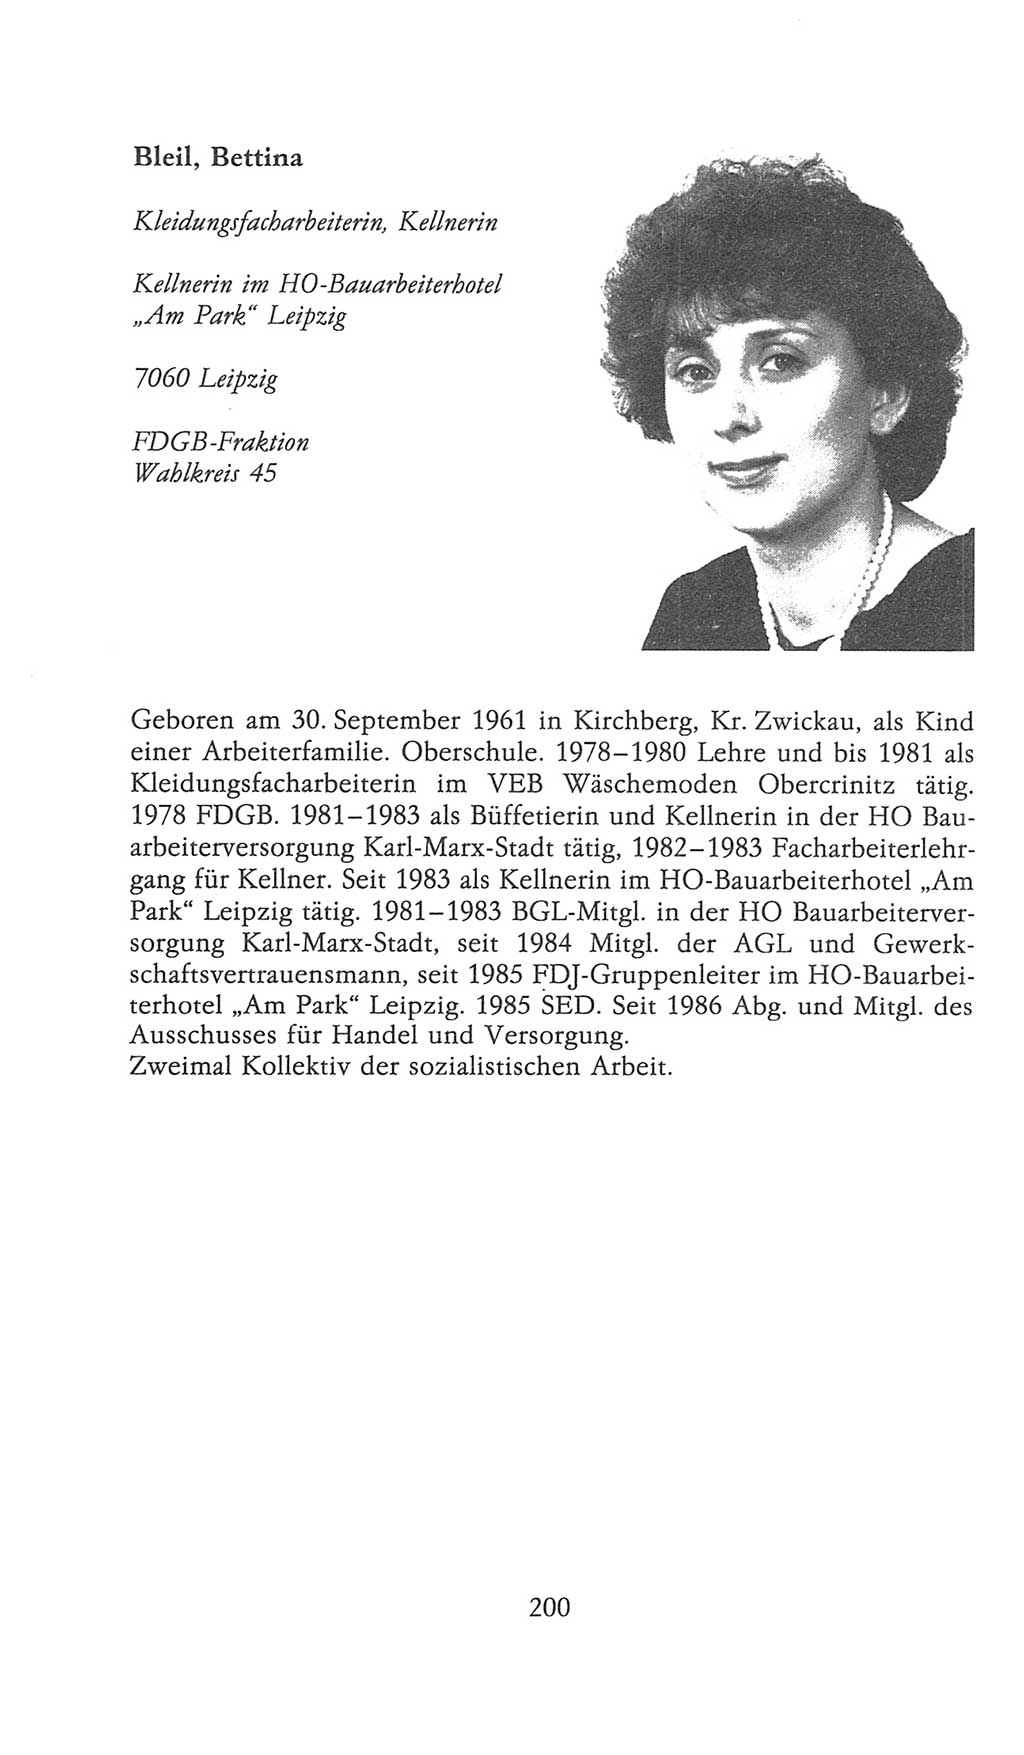 Volkskammer (VK) der Deutschen Demokratischen Republik (DDR), 9. Wahlperiode 1986-1990, Seite 200 (VK. DDR 9. WP. 1986-1990, S. 200)